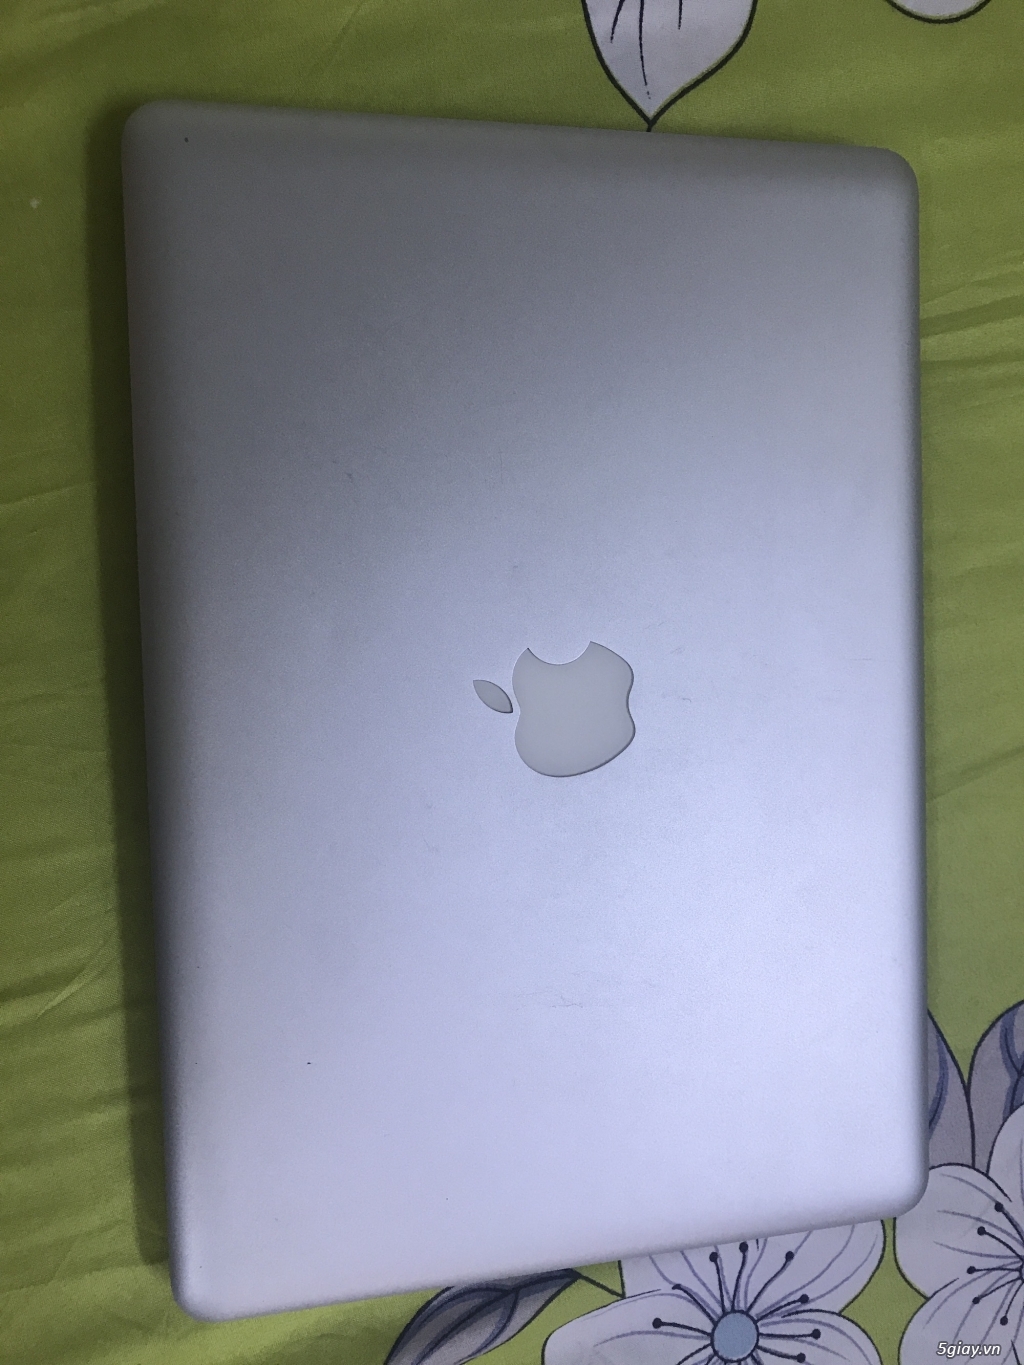 Bán Macbook Pro 2011 MC700 i5/4g/320g, đẹp long lanh - 3